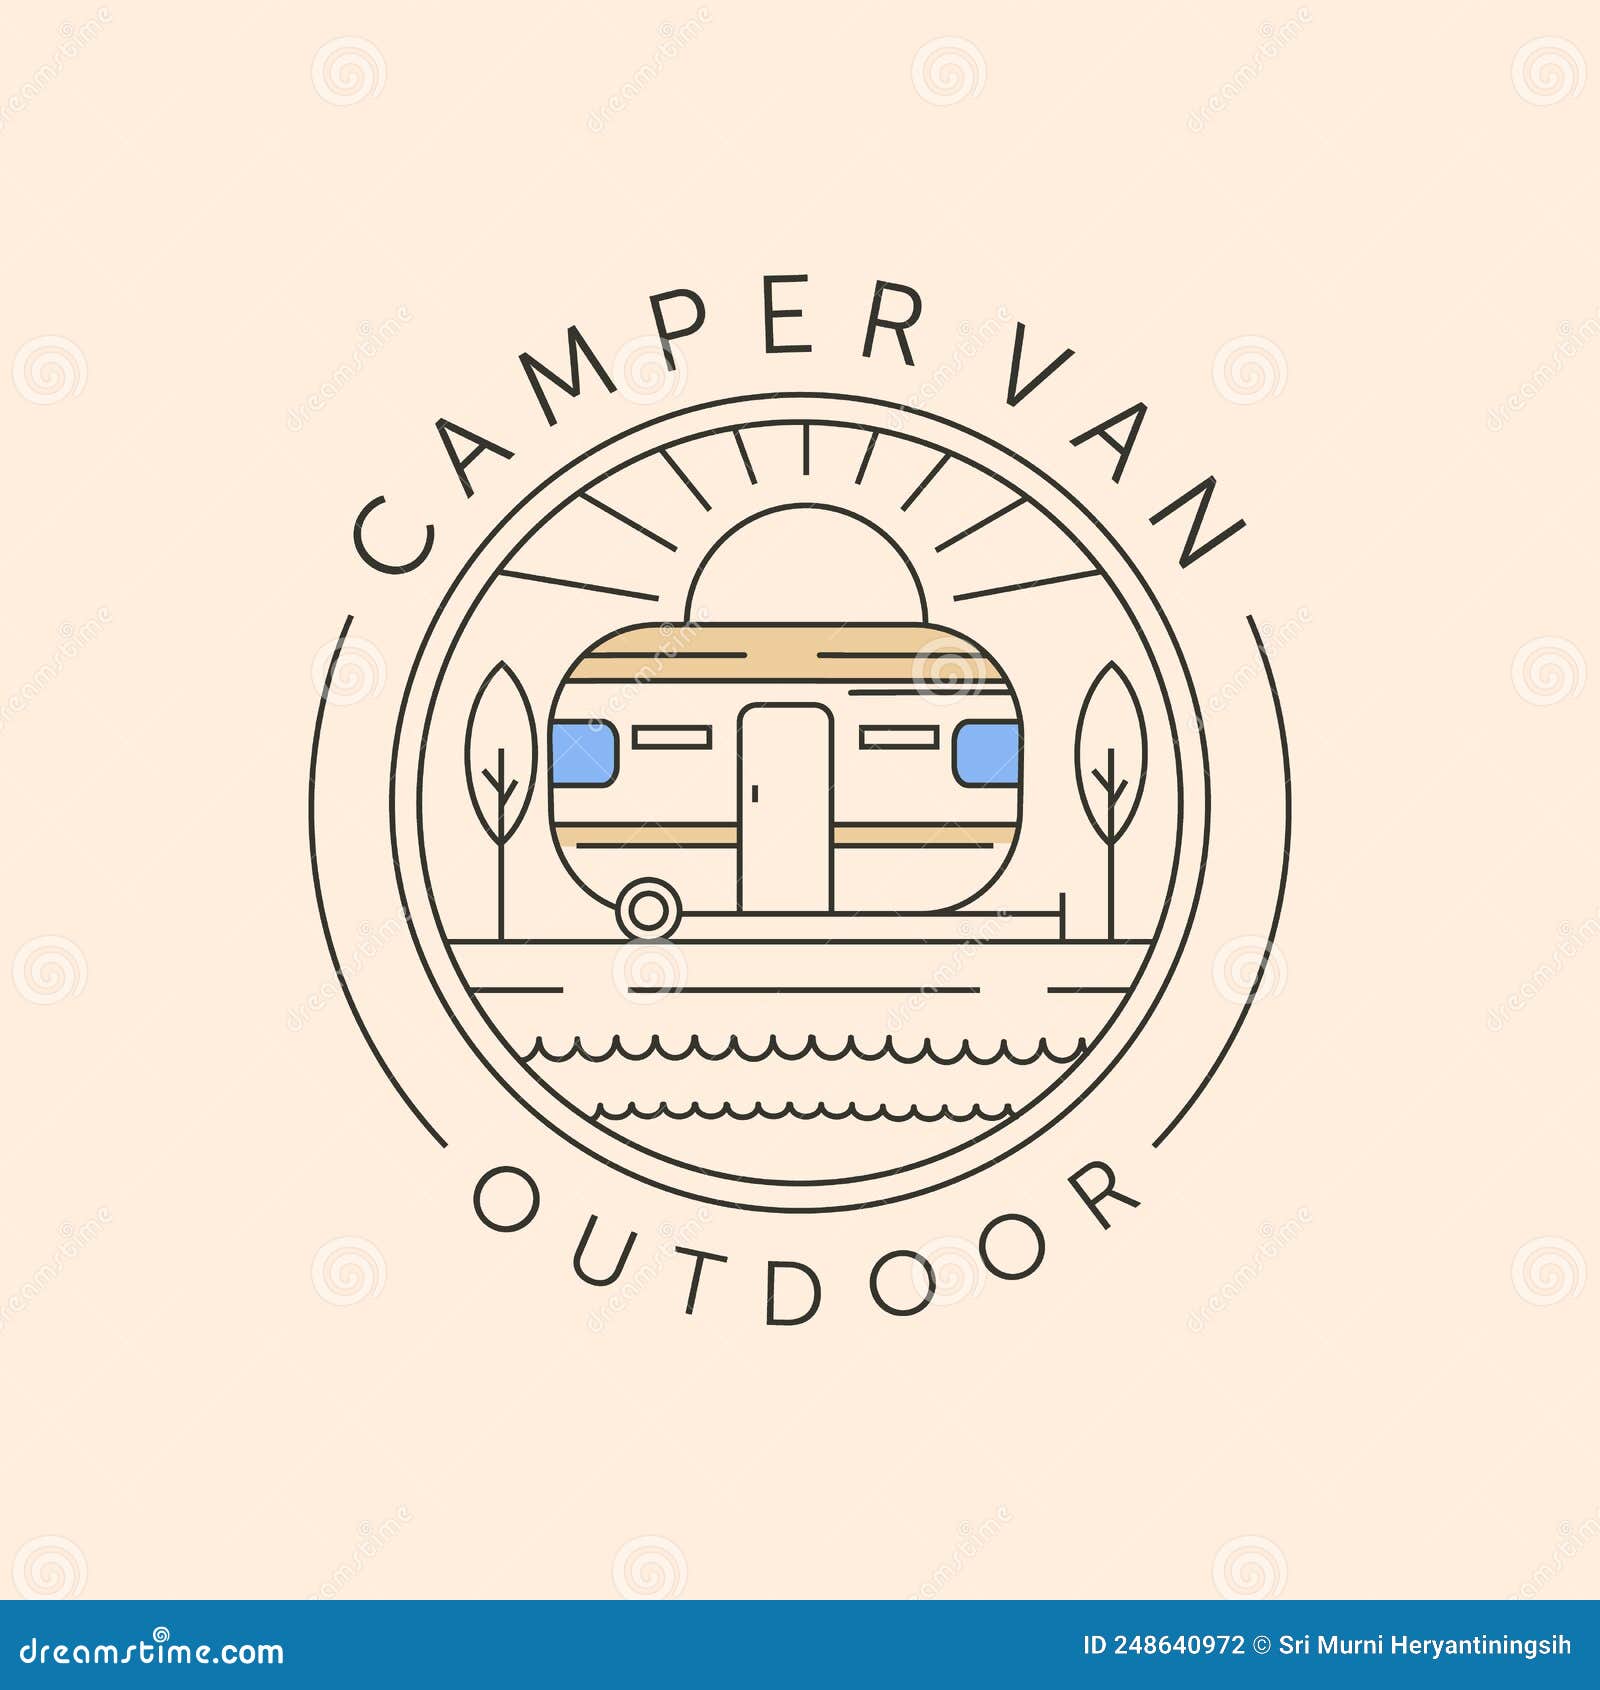 Camper Van Outdoor and Sunburst Line Art Logo Vector Symbol ...